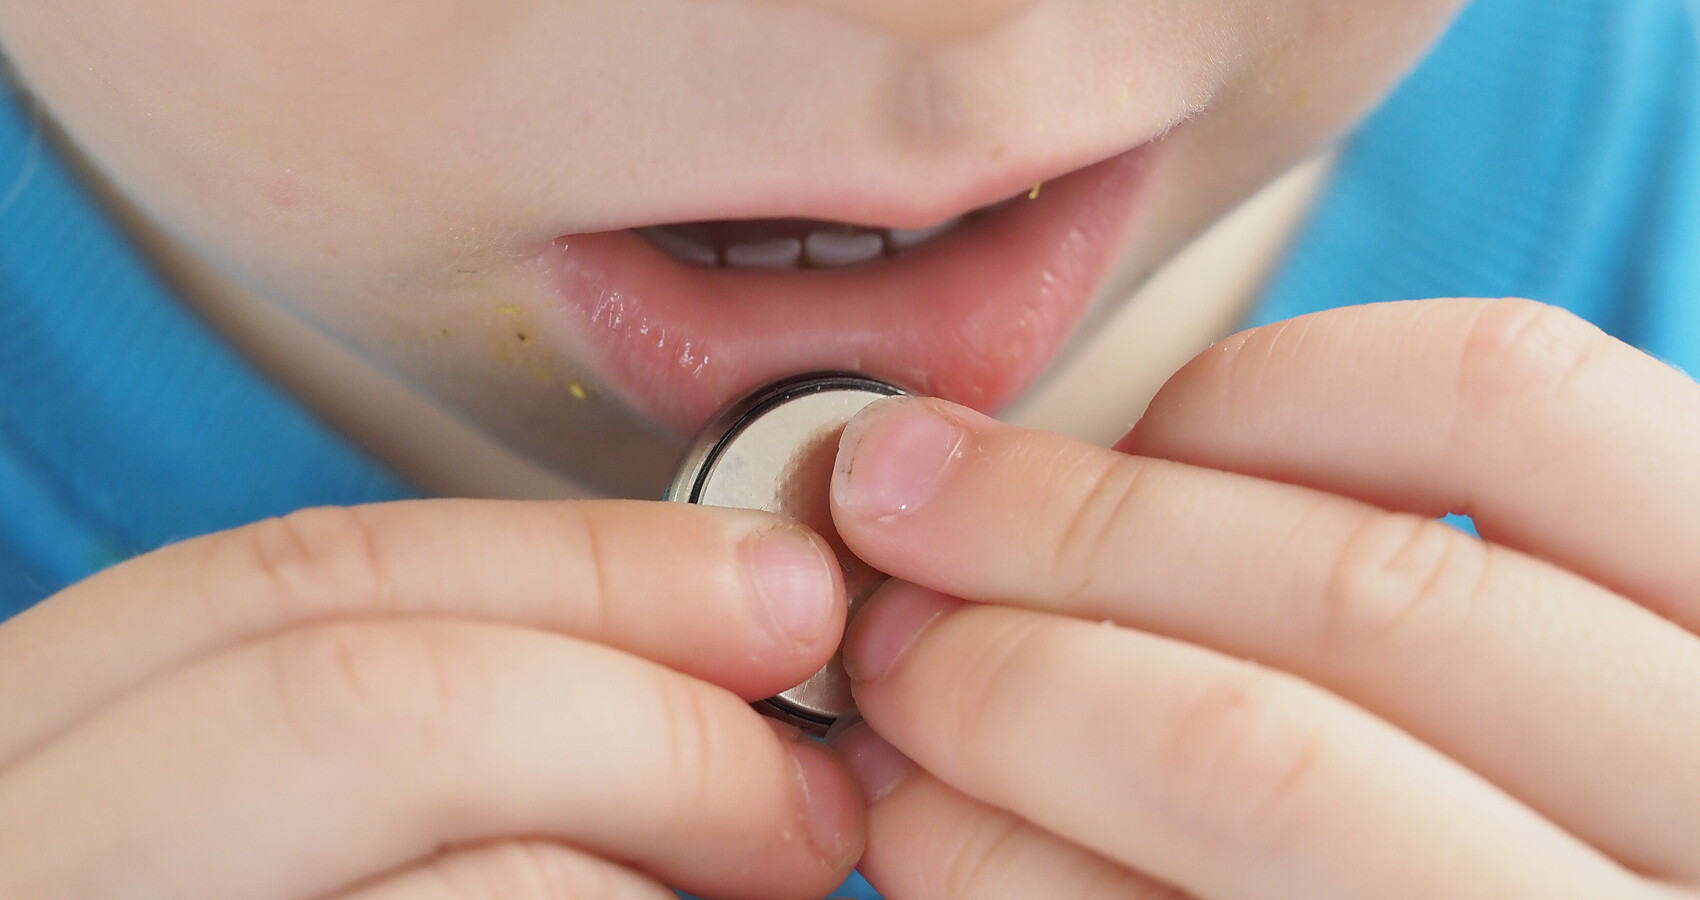 Ein Kind hält eine Knopfzelle in den Händen und führt sie in richtung Mund